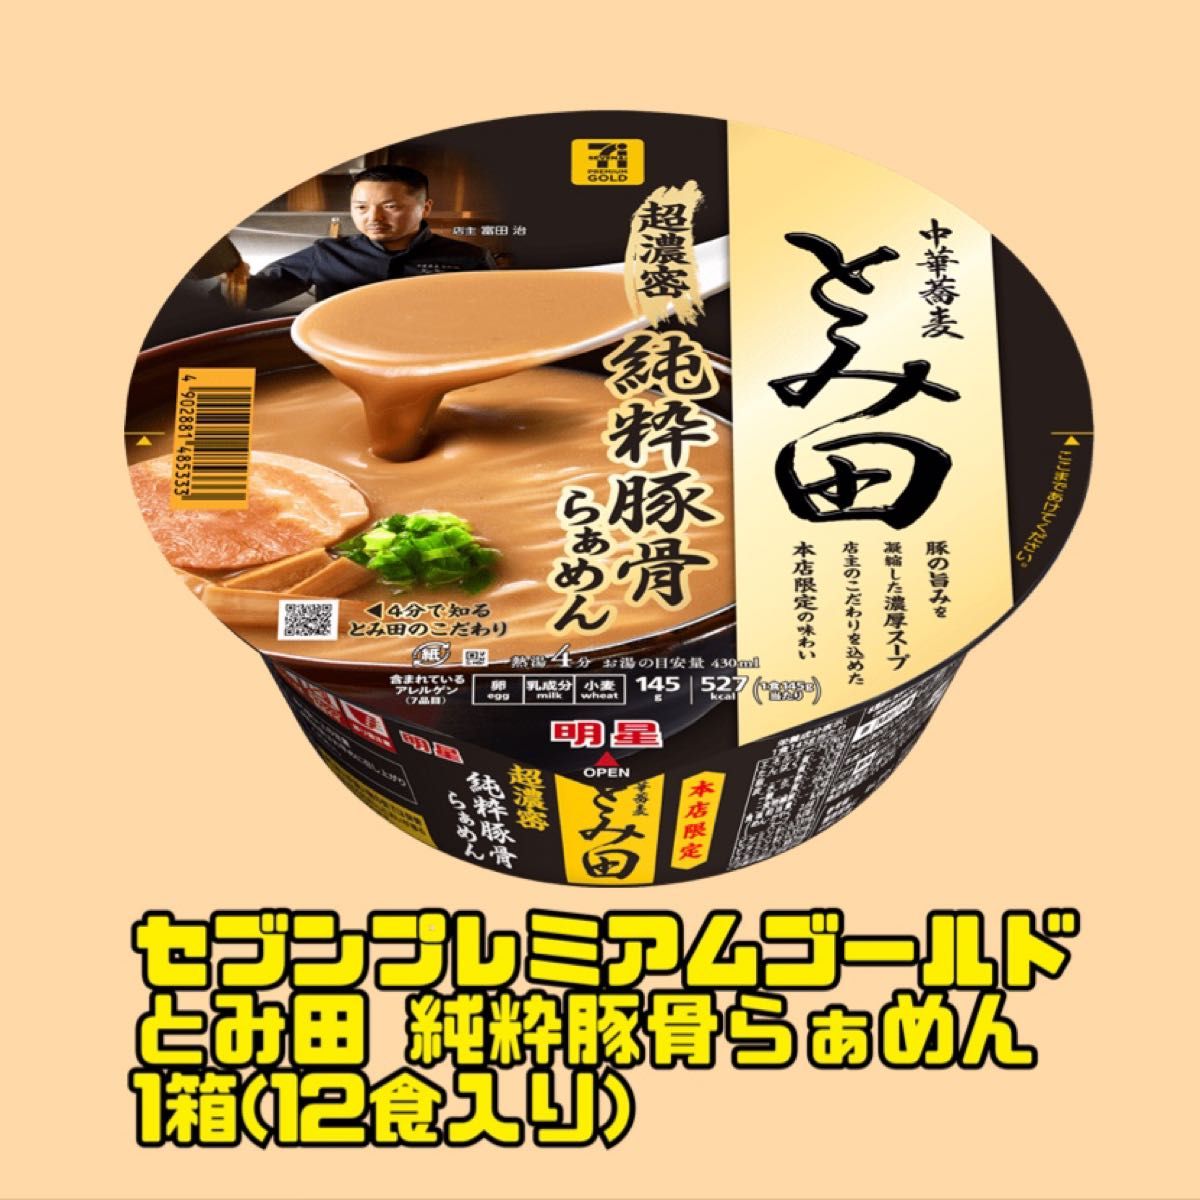 セブンプレミアム 中華蕎麦 とみ田 純粋豚骨らぁめん 1箱(12食入り)！